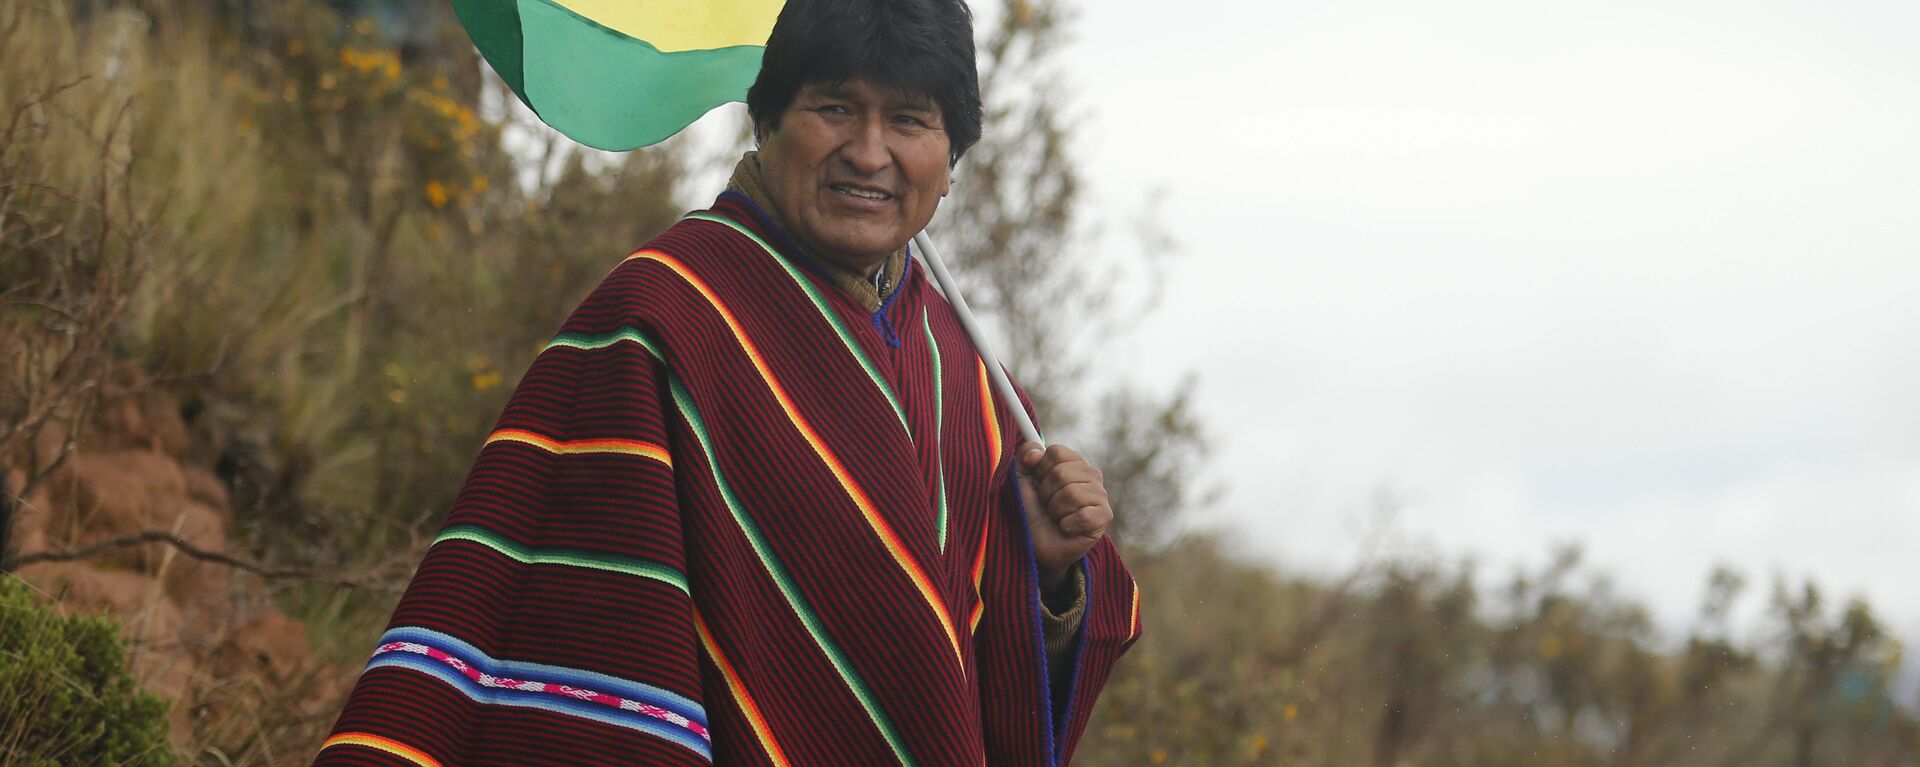 Evo Morales, expresidente de Bolivia - Sputnik Mundo, 1920, 21.10.2021